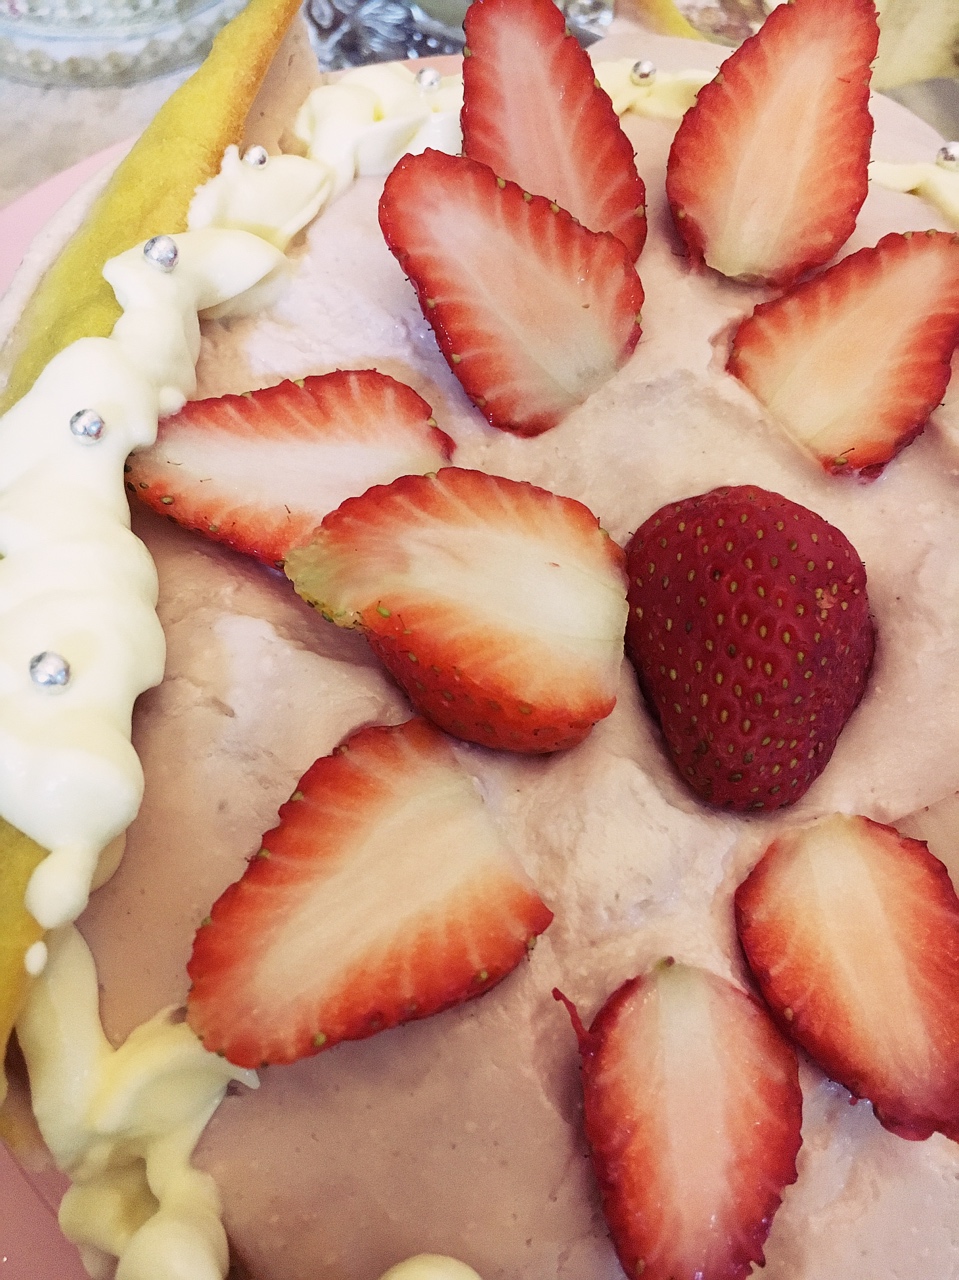 草莓乳酪慕斯蛋糕